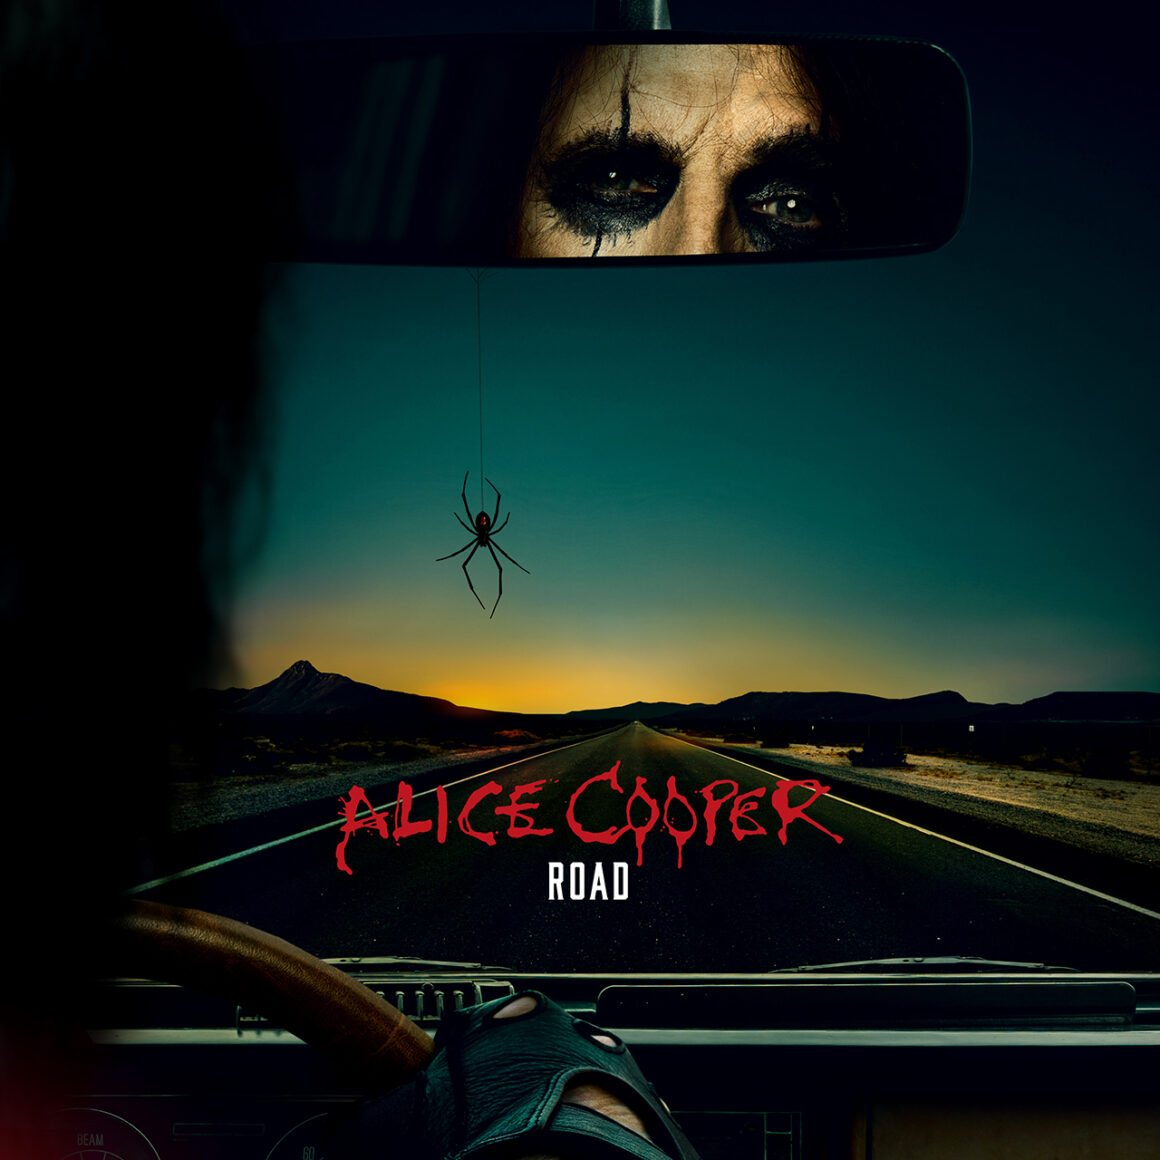 Alice Cooper, Illustration de route, @ alicecooper